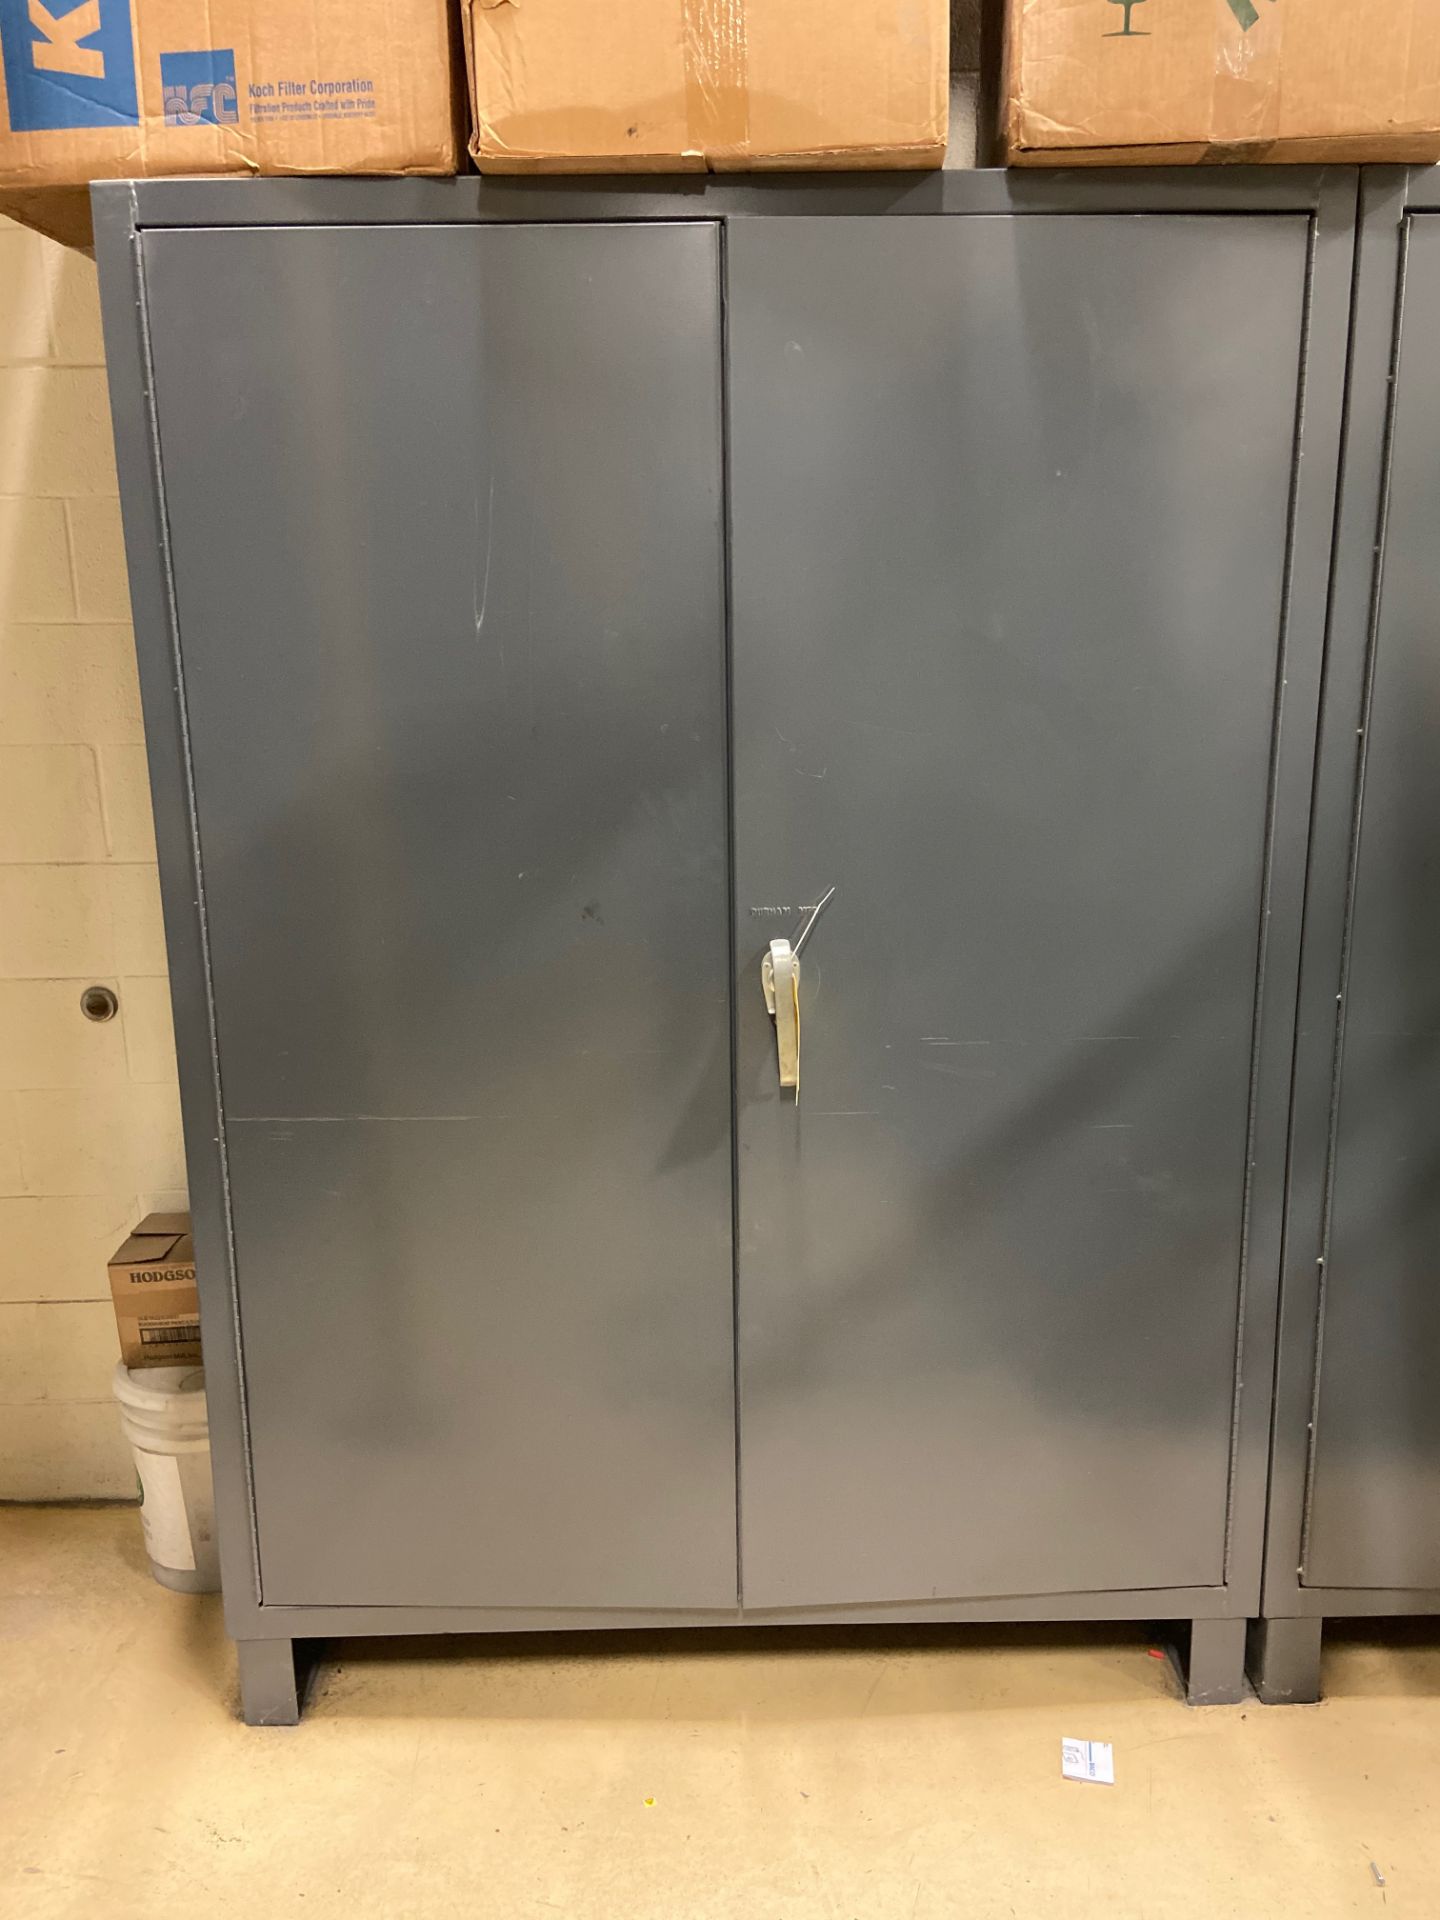 Metal Cabinet w/ Contnets, 5' wide x 2' deep x 7' tall